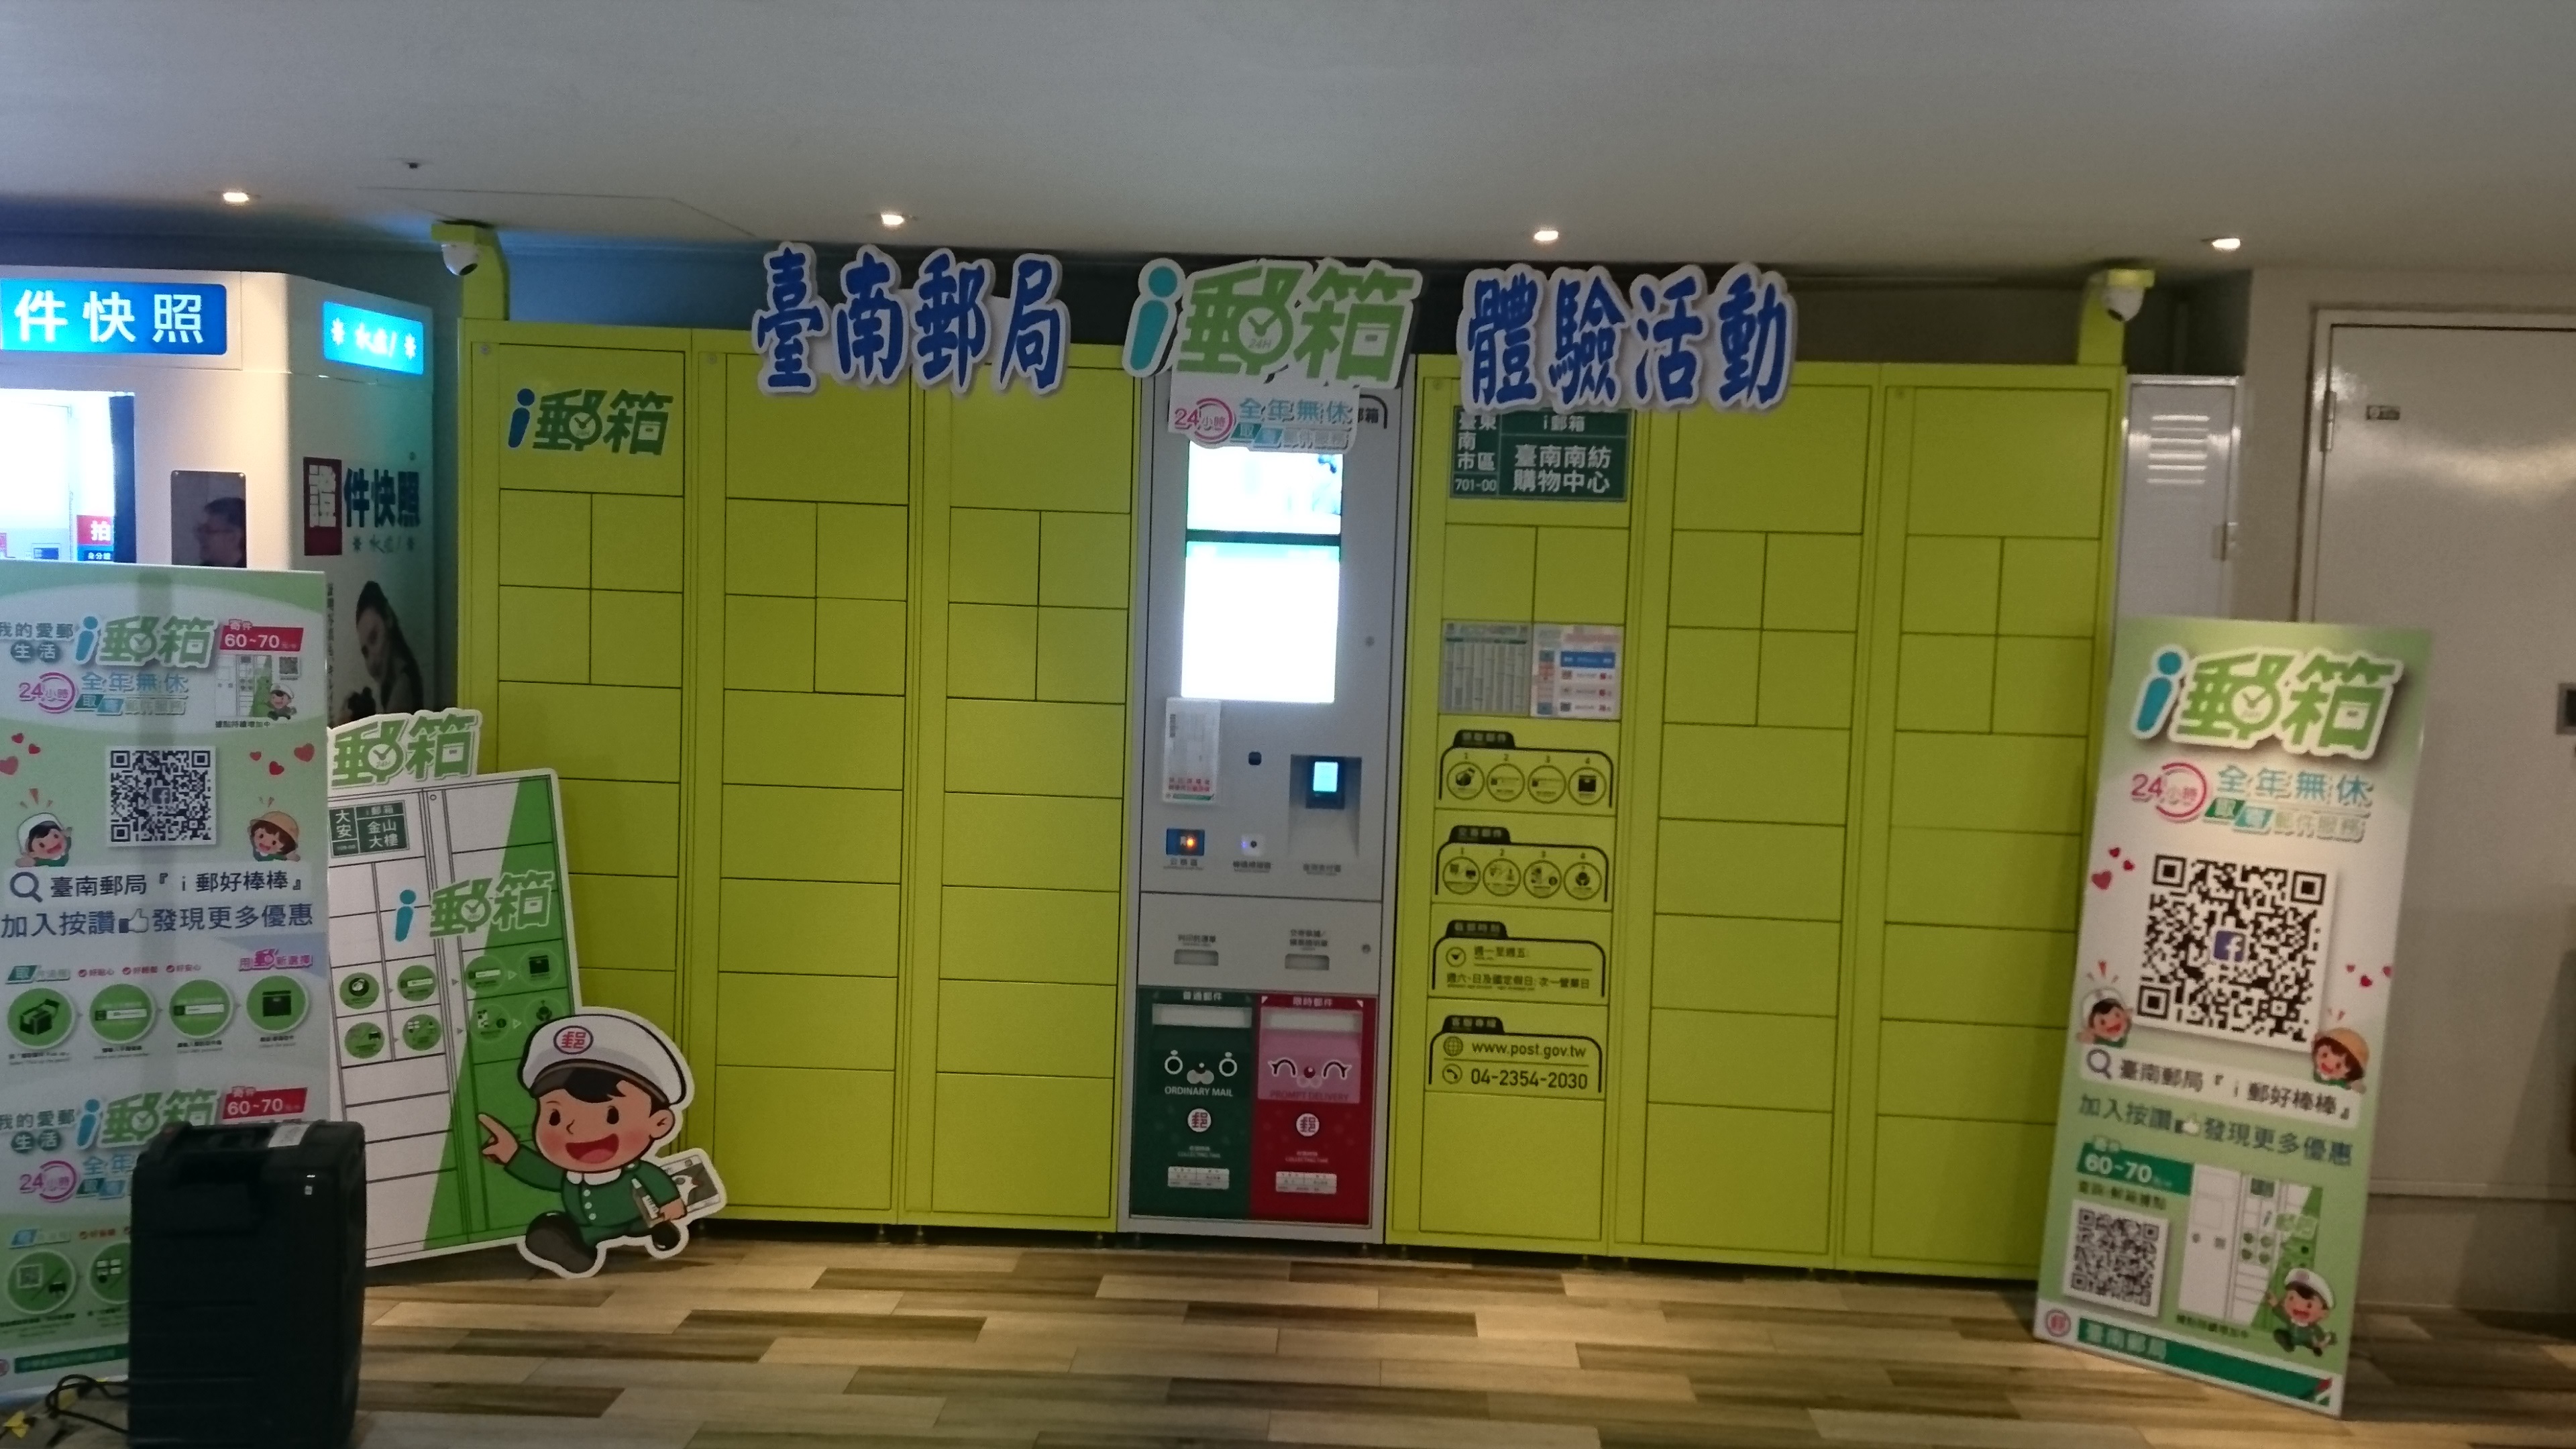 臺南郵局舉辦「南紡購物中心i郵箱體驗」活動